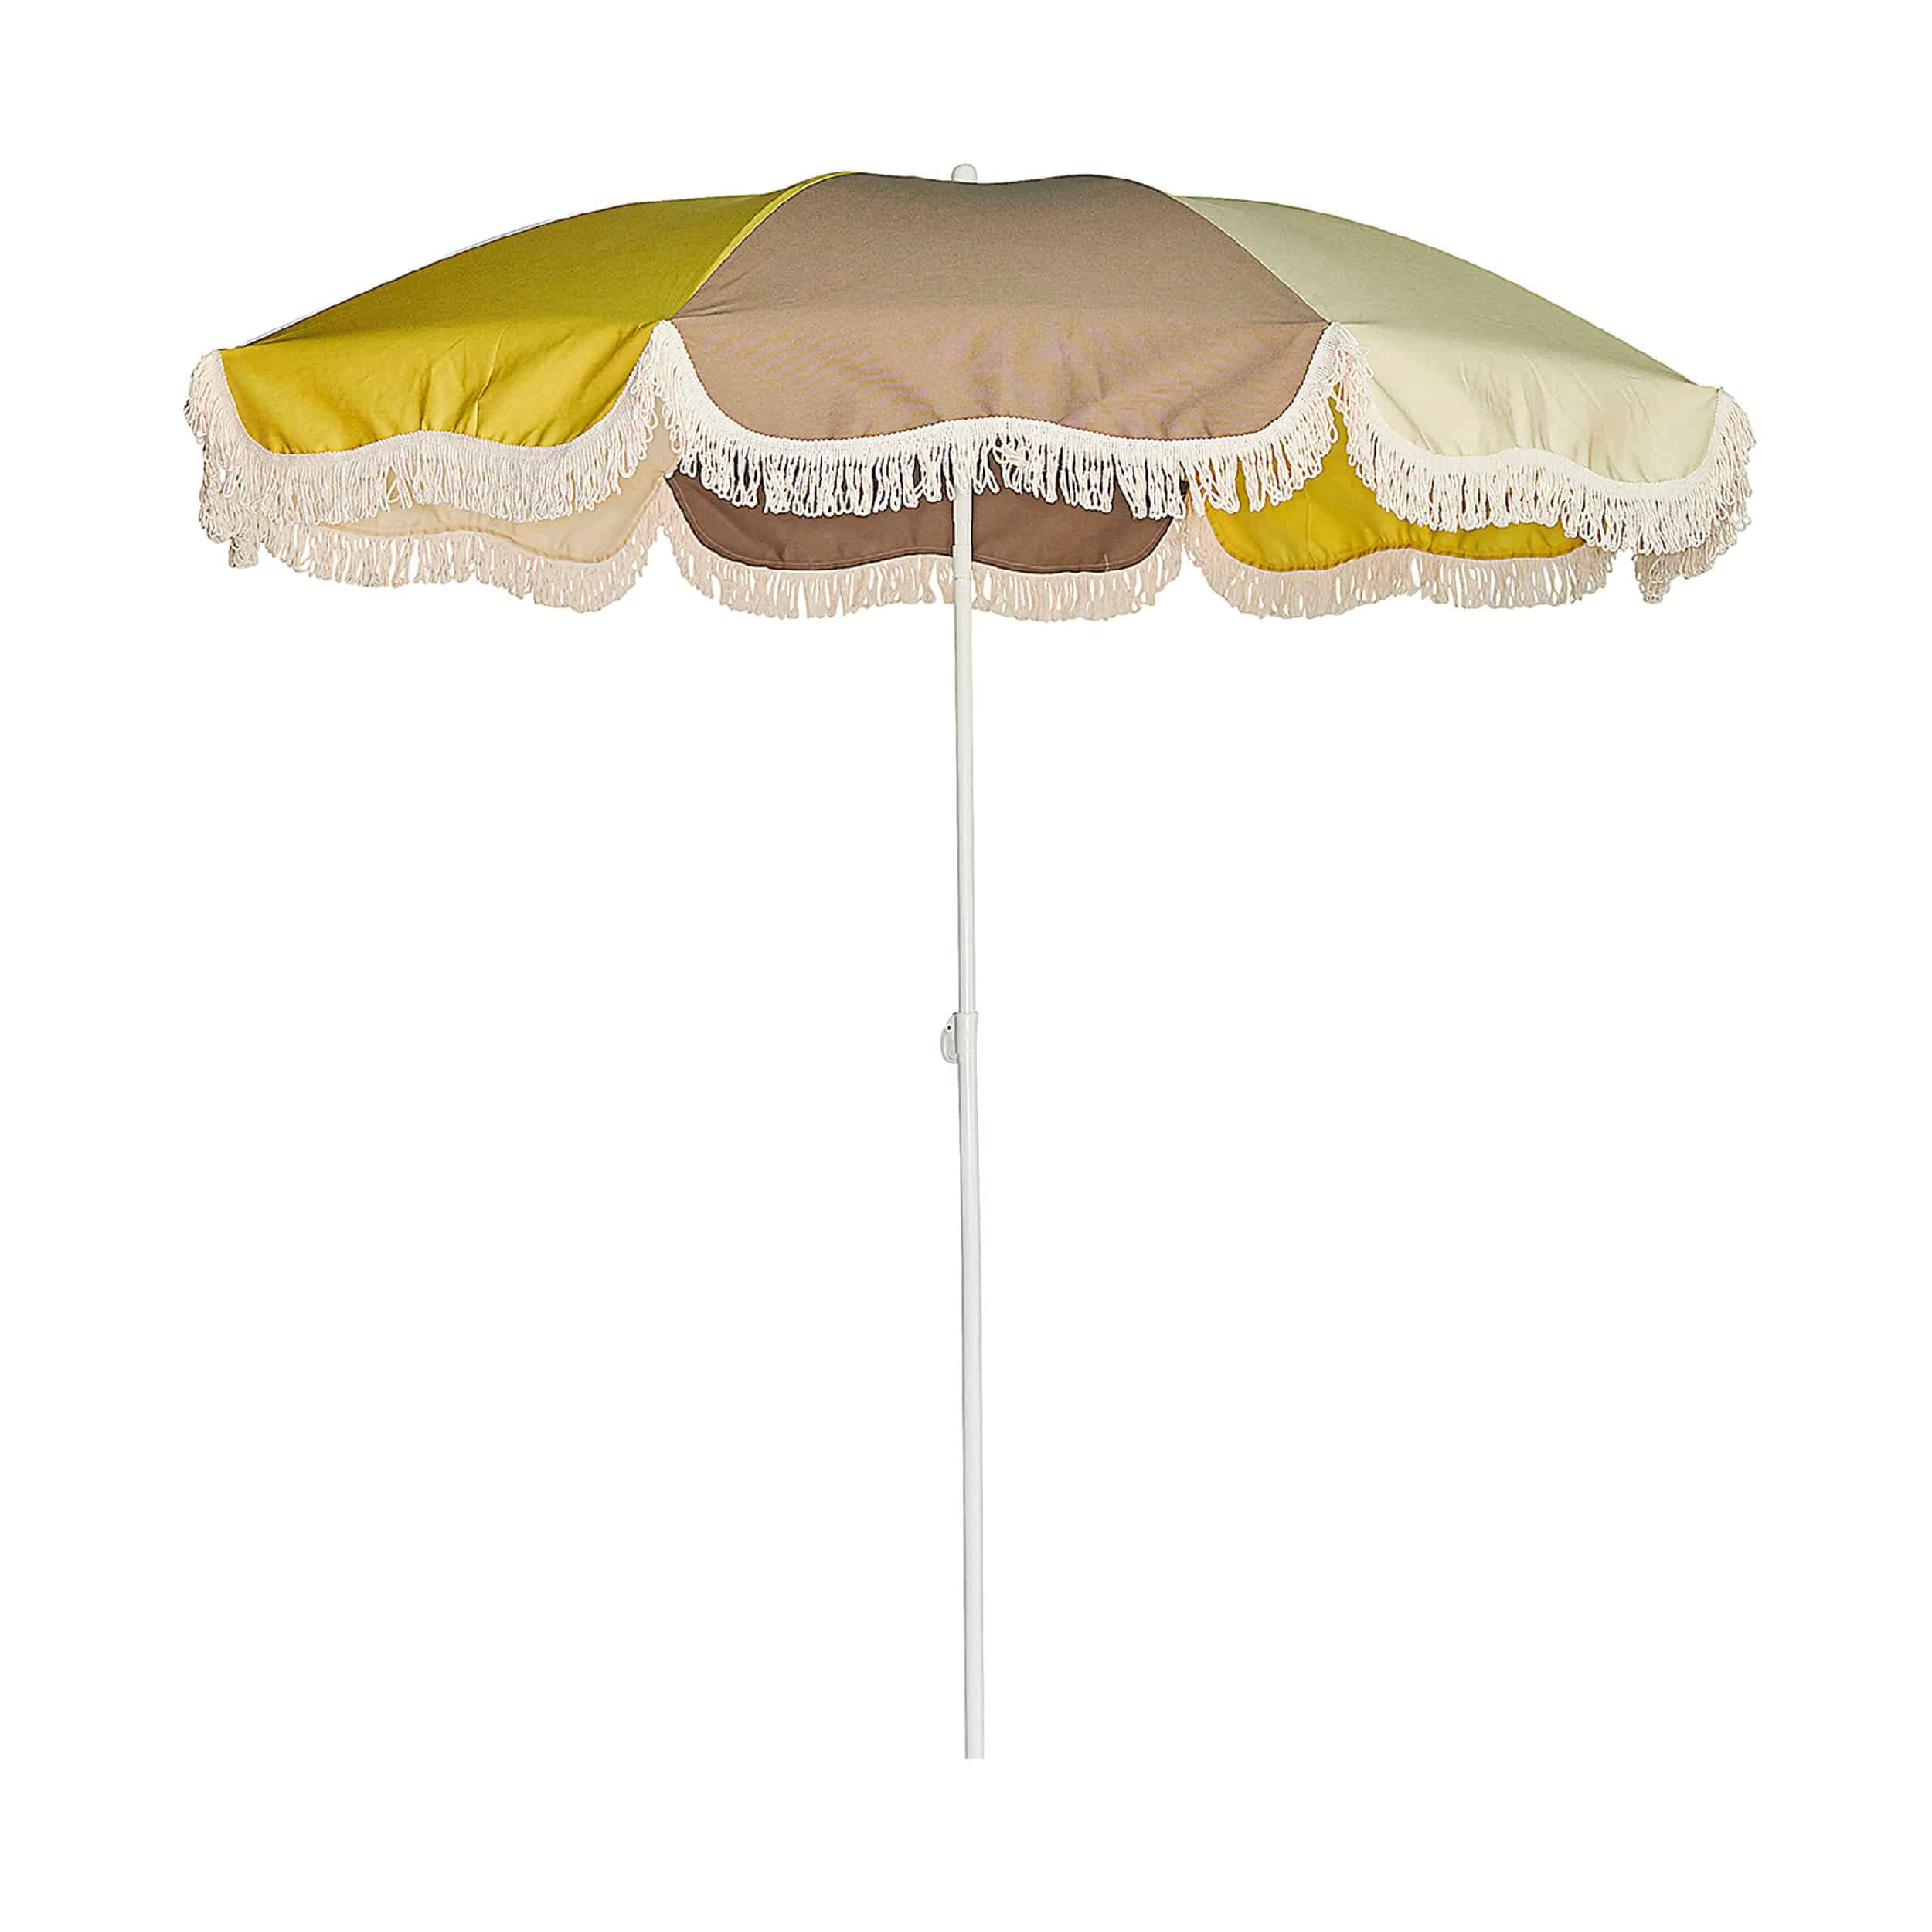 Retro Sonnenschirm mit Knickgelenk ohne Schirmständer